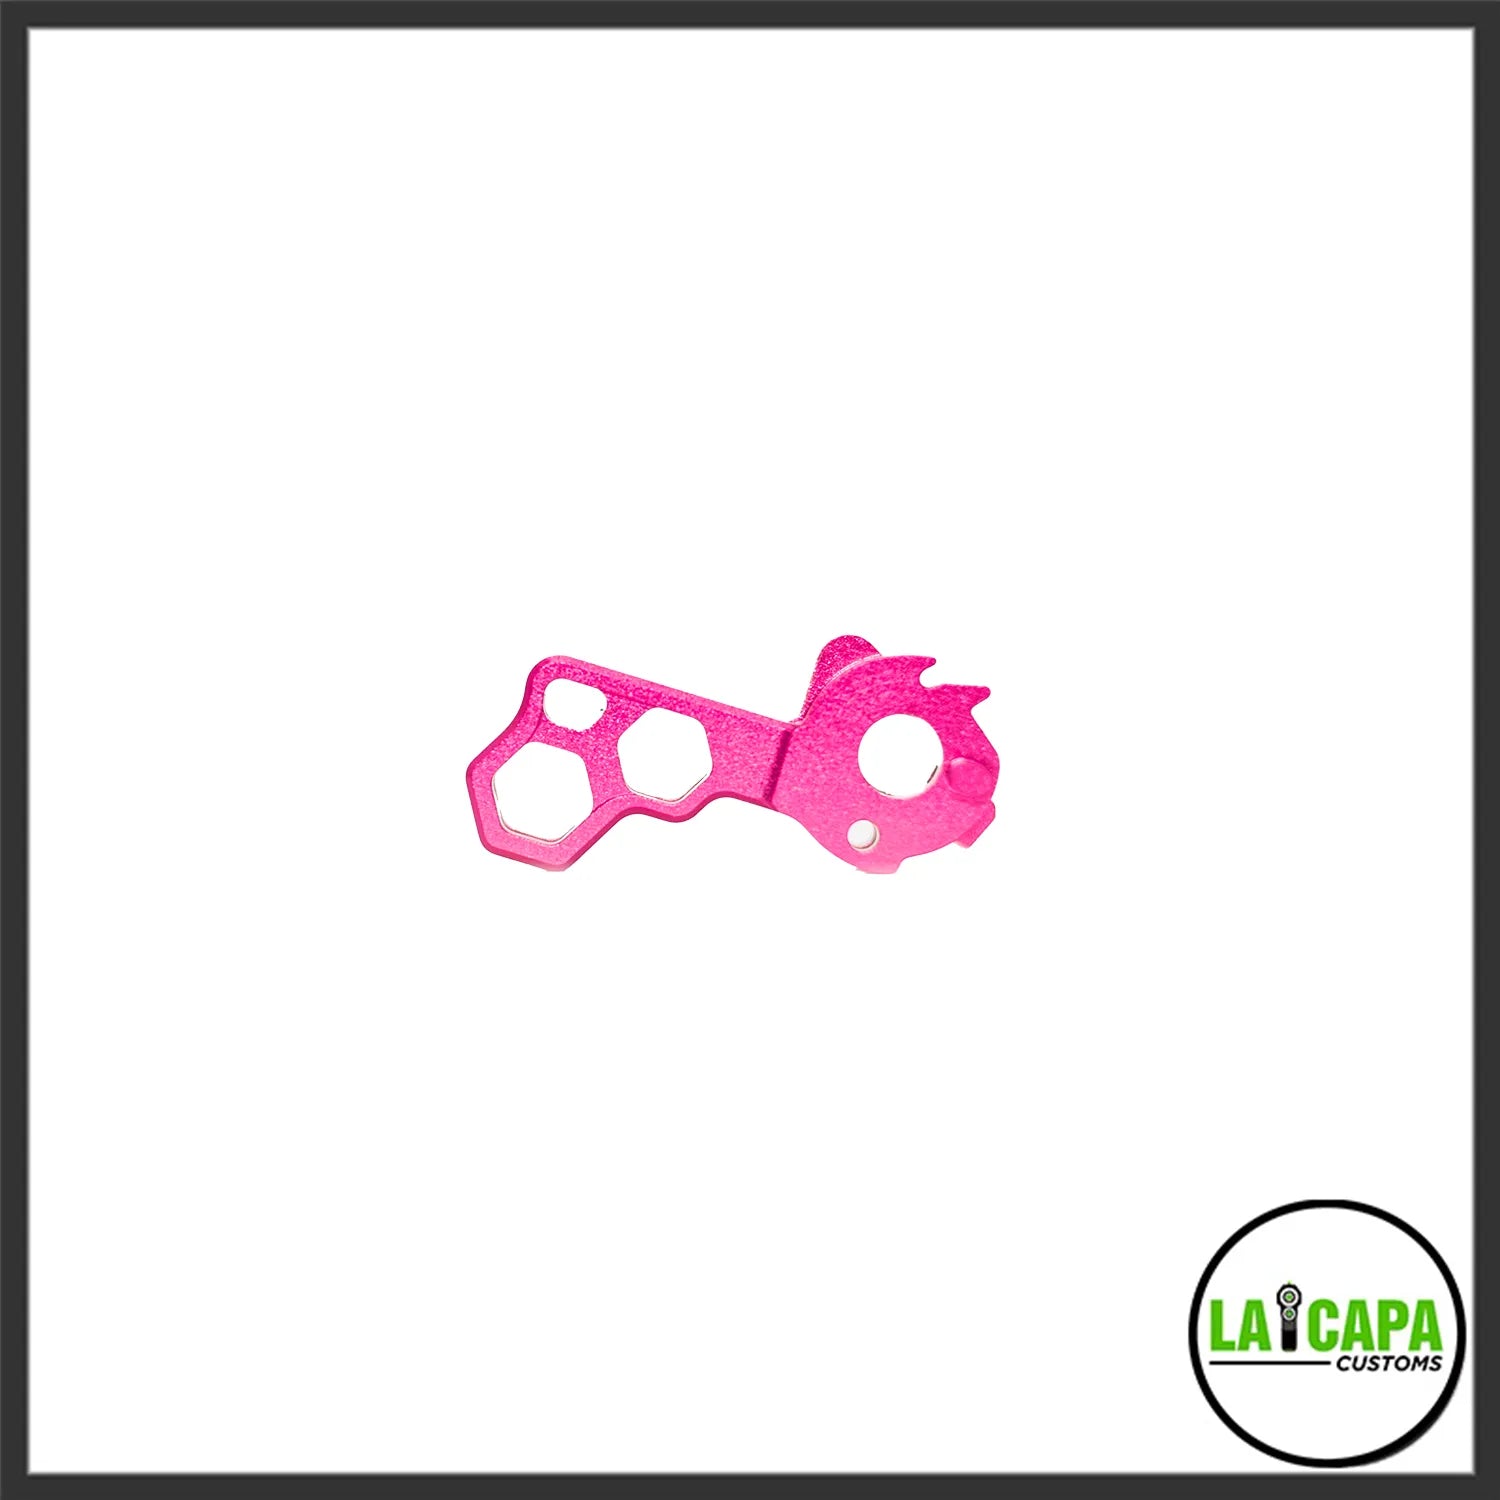 LA Capa Customs “HIVE” Duralumin Hammer for Hi Capa - Pink